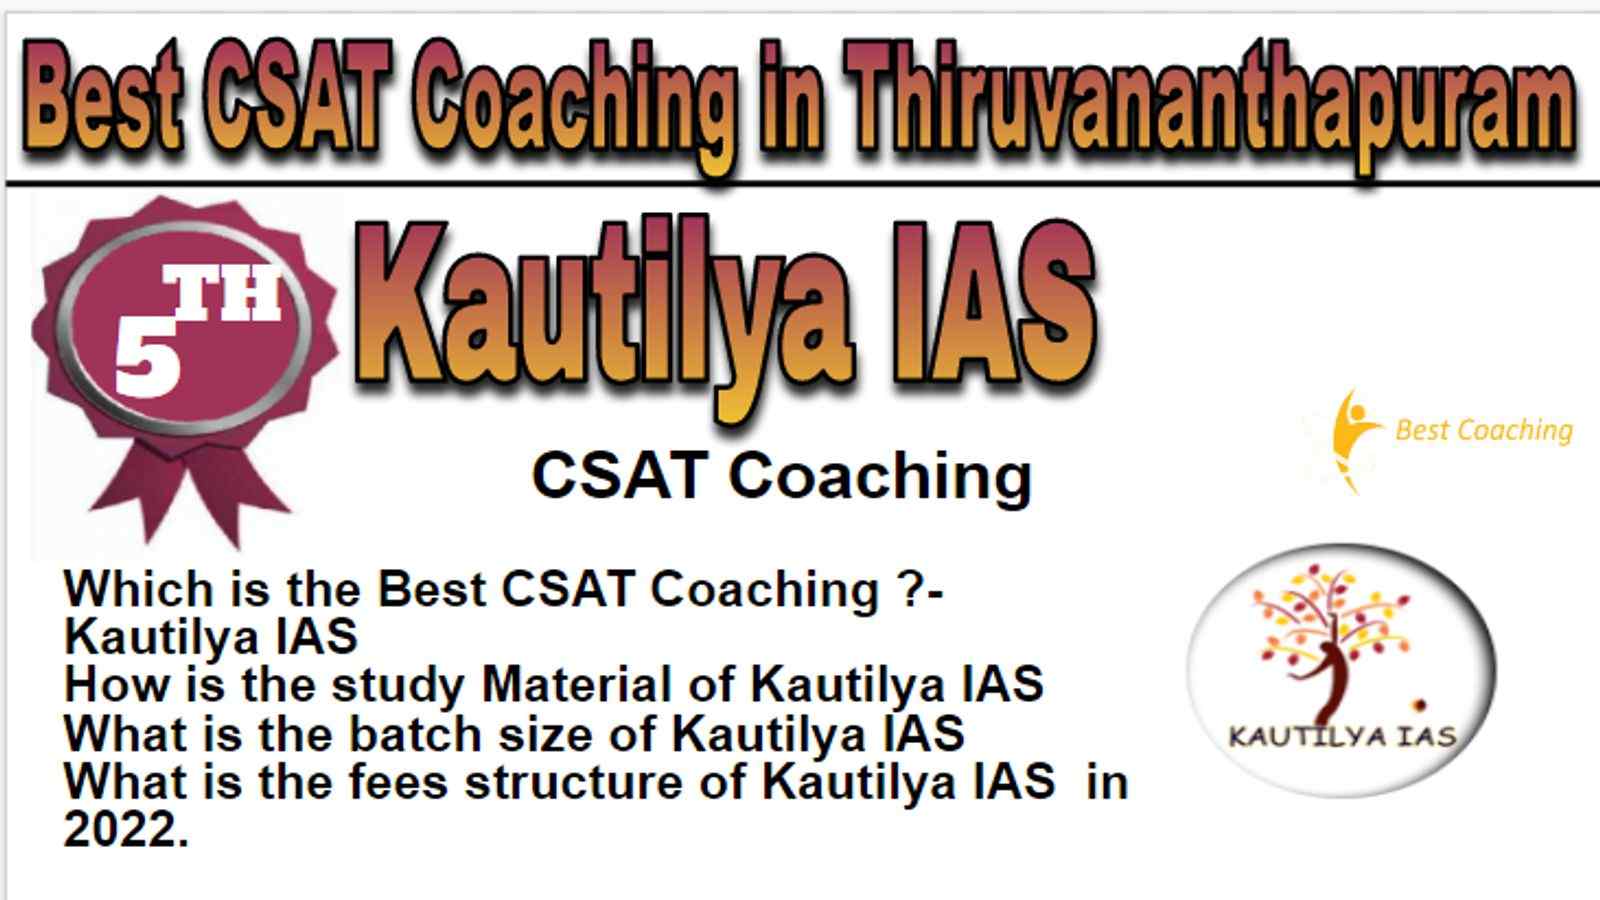 Rank 5 Best CSAT Coaching in Thiruvananthapuram